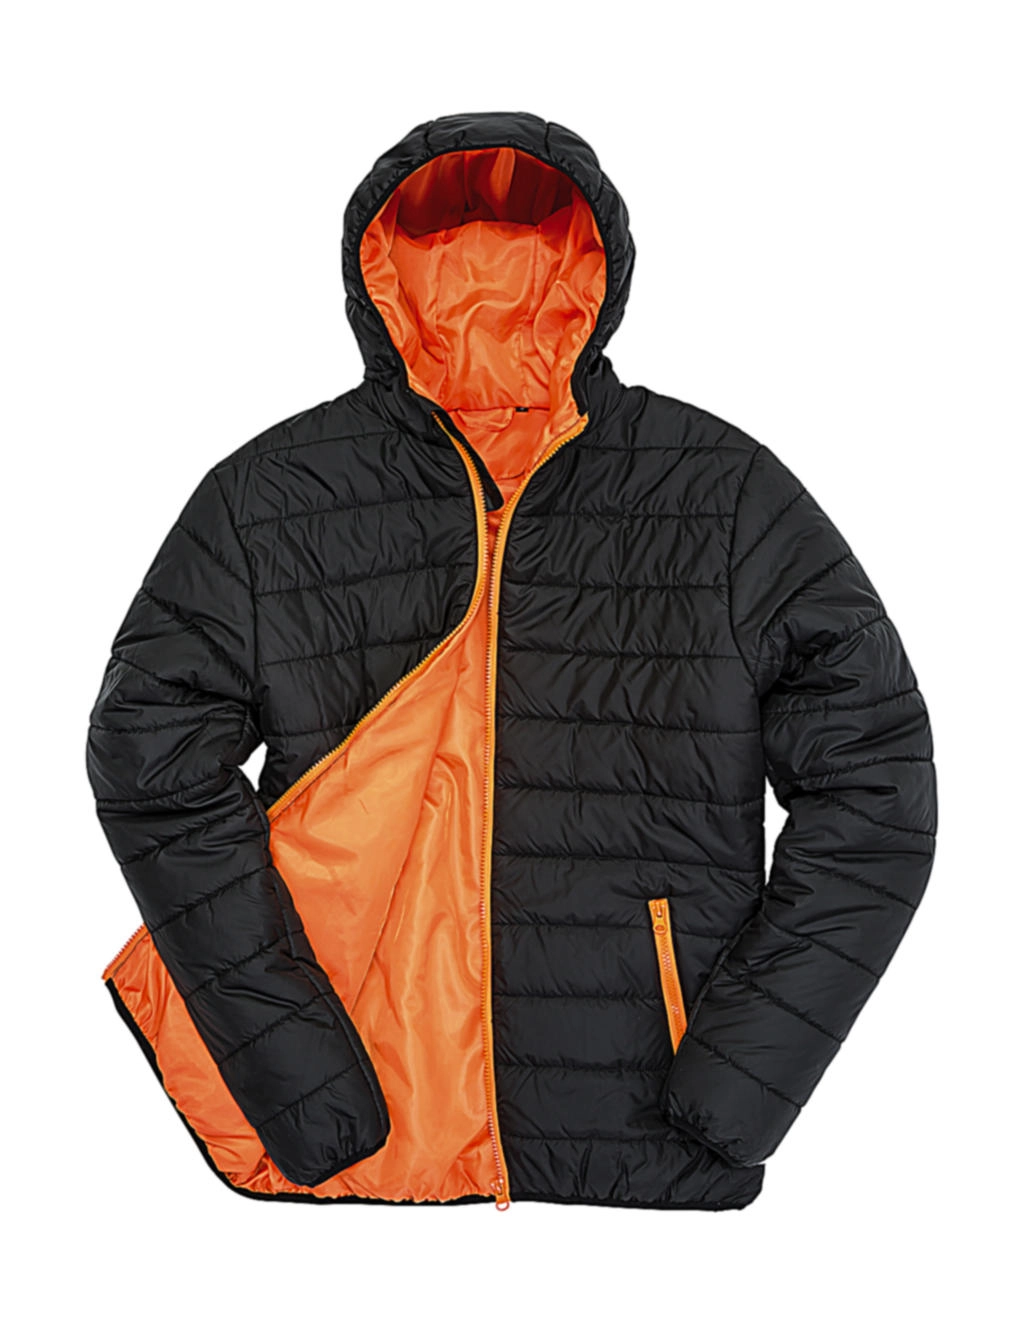 Soft Padded Jacket zum Besticken und Bedrucken in der Farbe Black/Orange mit Ihren Logo, Schriftzug oder Motiv.